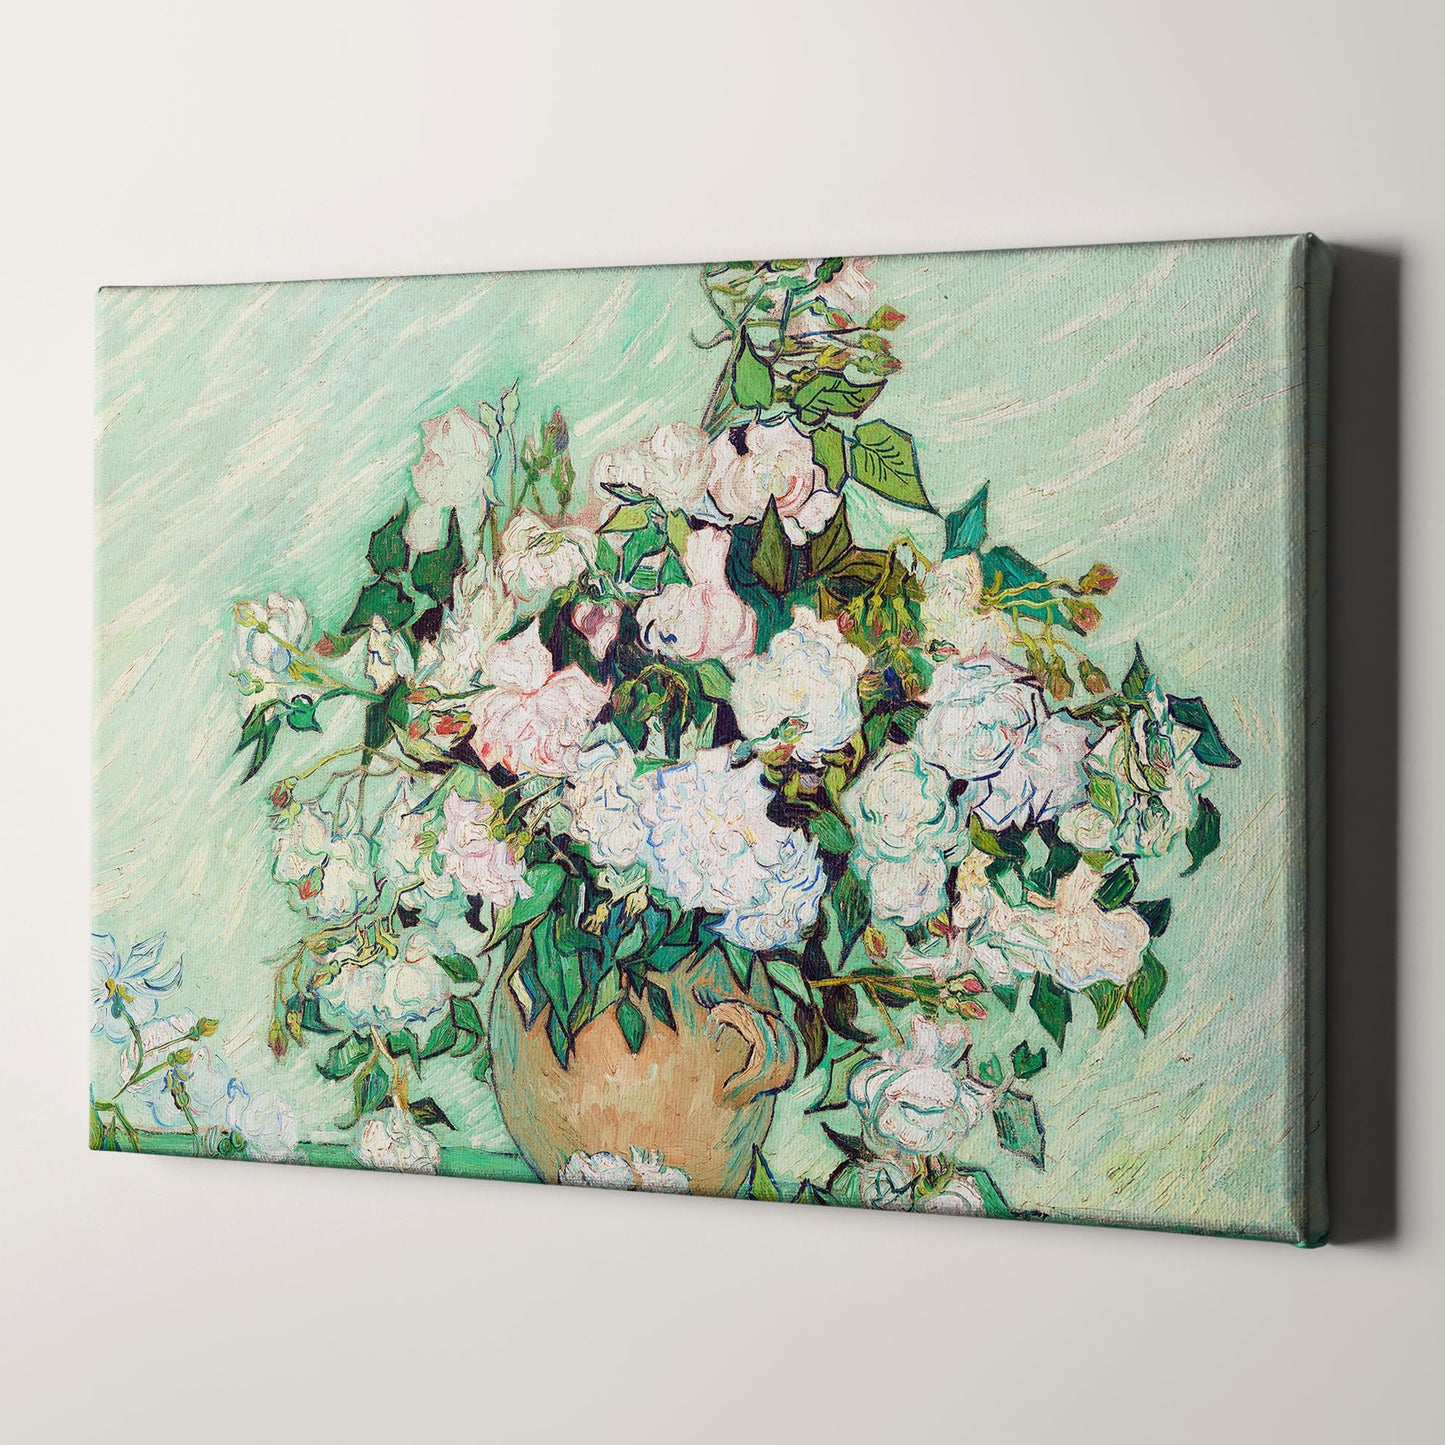 Roses (1890) by Van Gogh